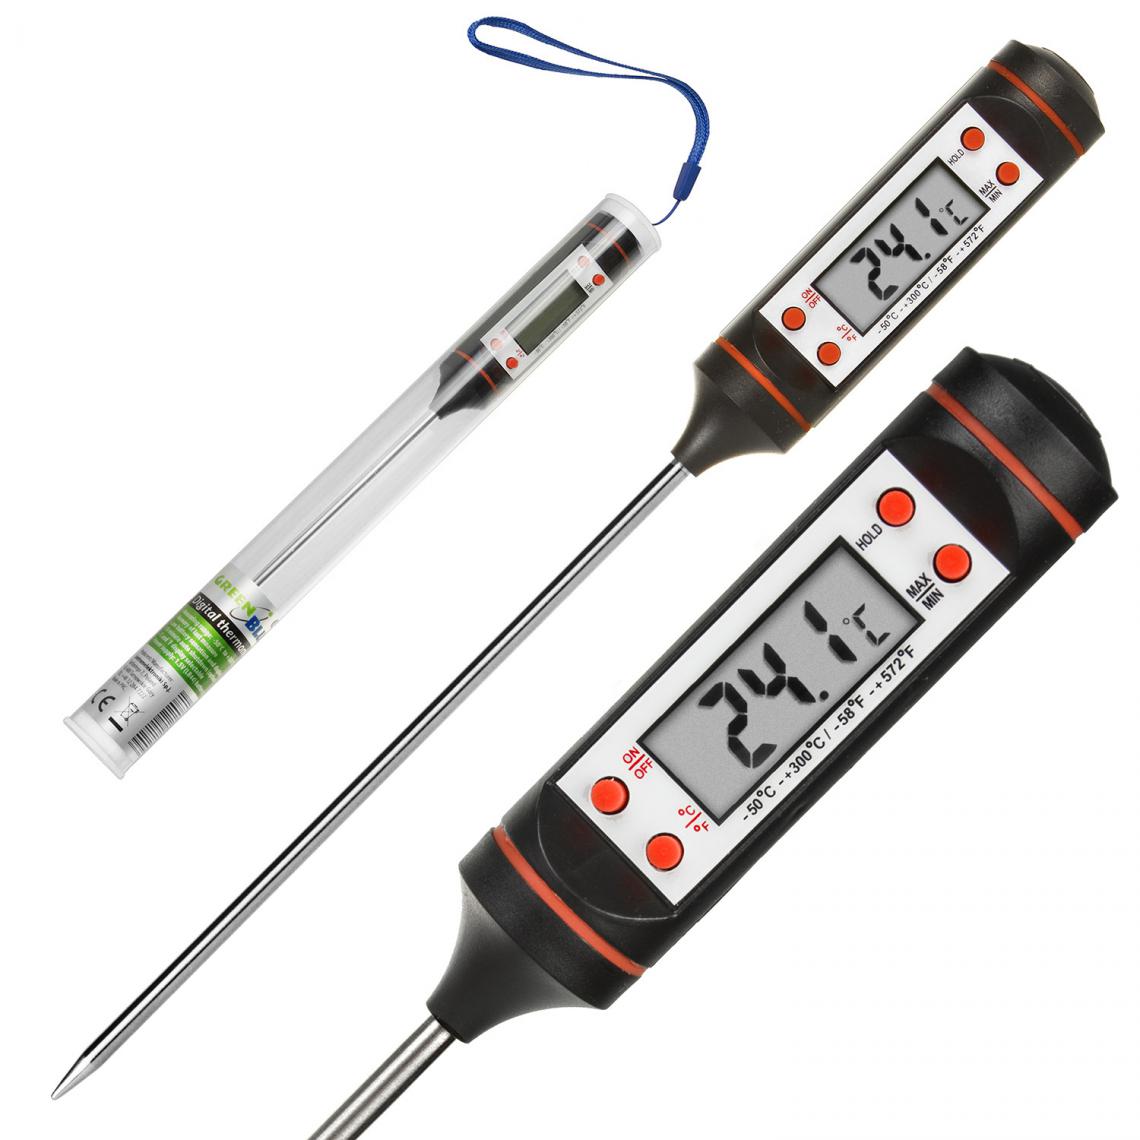 Greenblue - Thermomètre / sonde pour aliments GreenBlue GB178, longueur de sonde 15 cm, plage de température -50°C à +300°C, précision 0,1°C - Appareils de mesure